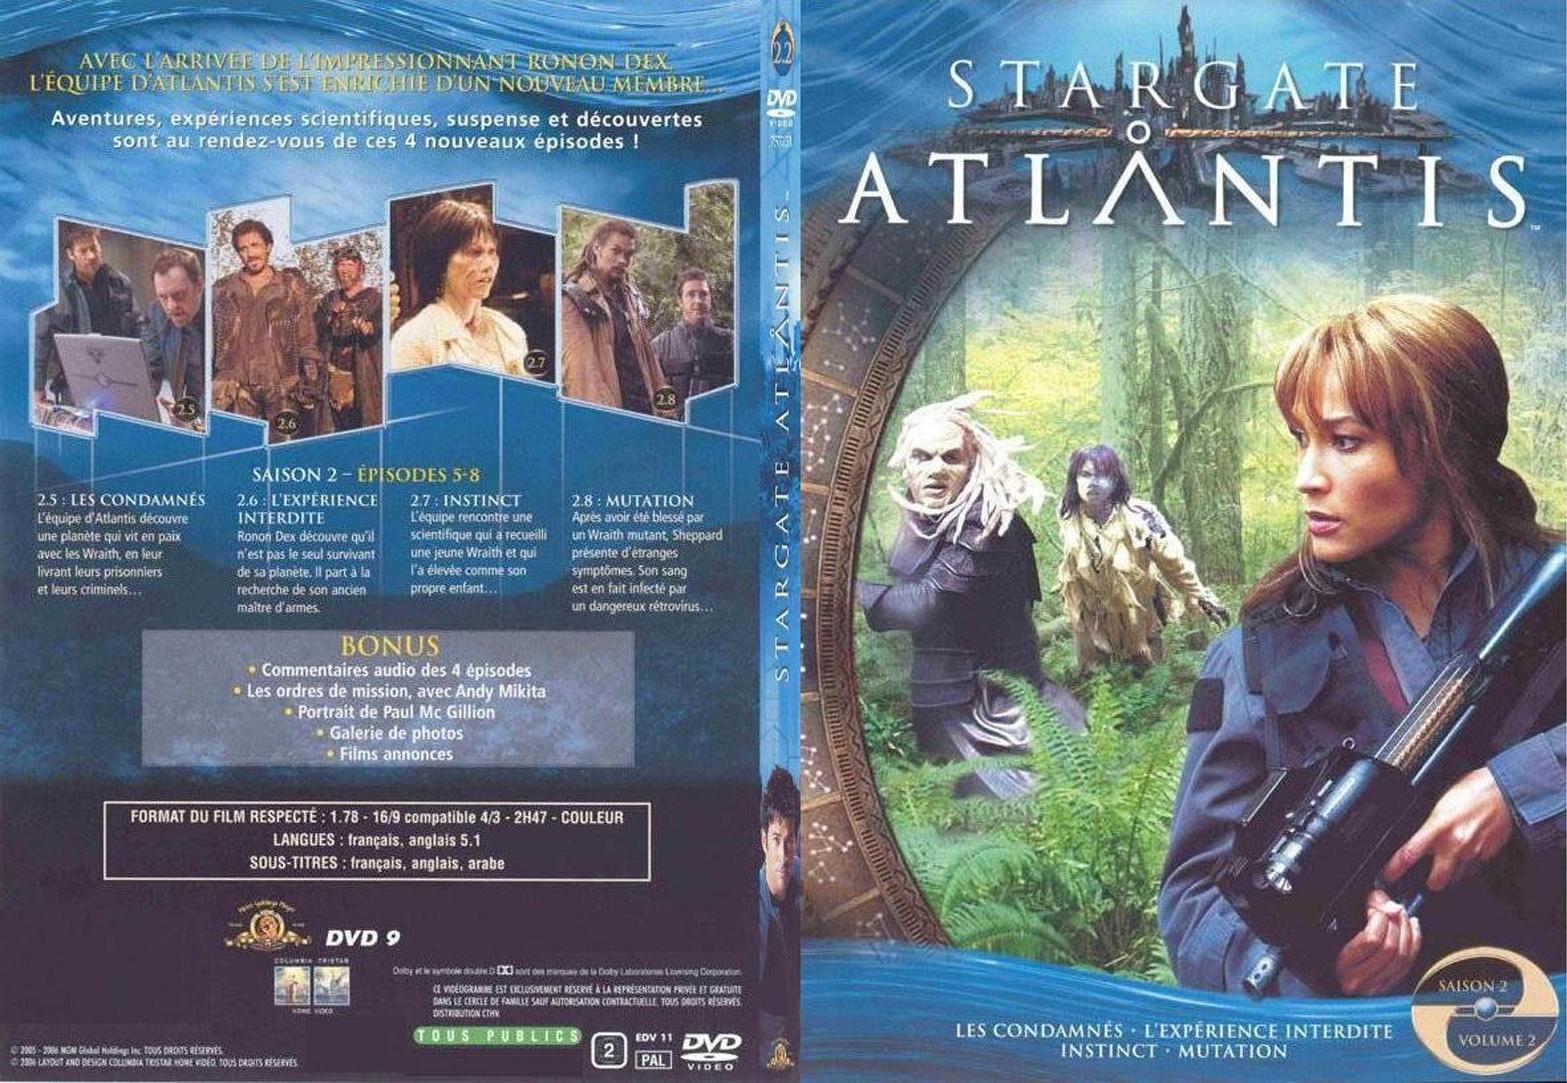 Jaquette DVD Stargate Atlantis saison 2 vol 2 - SLIM